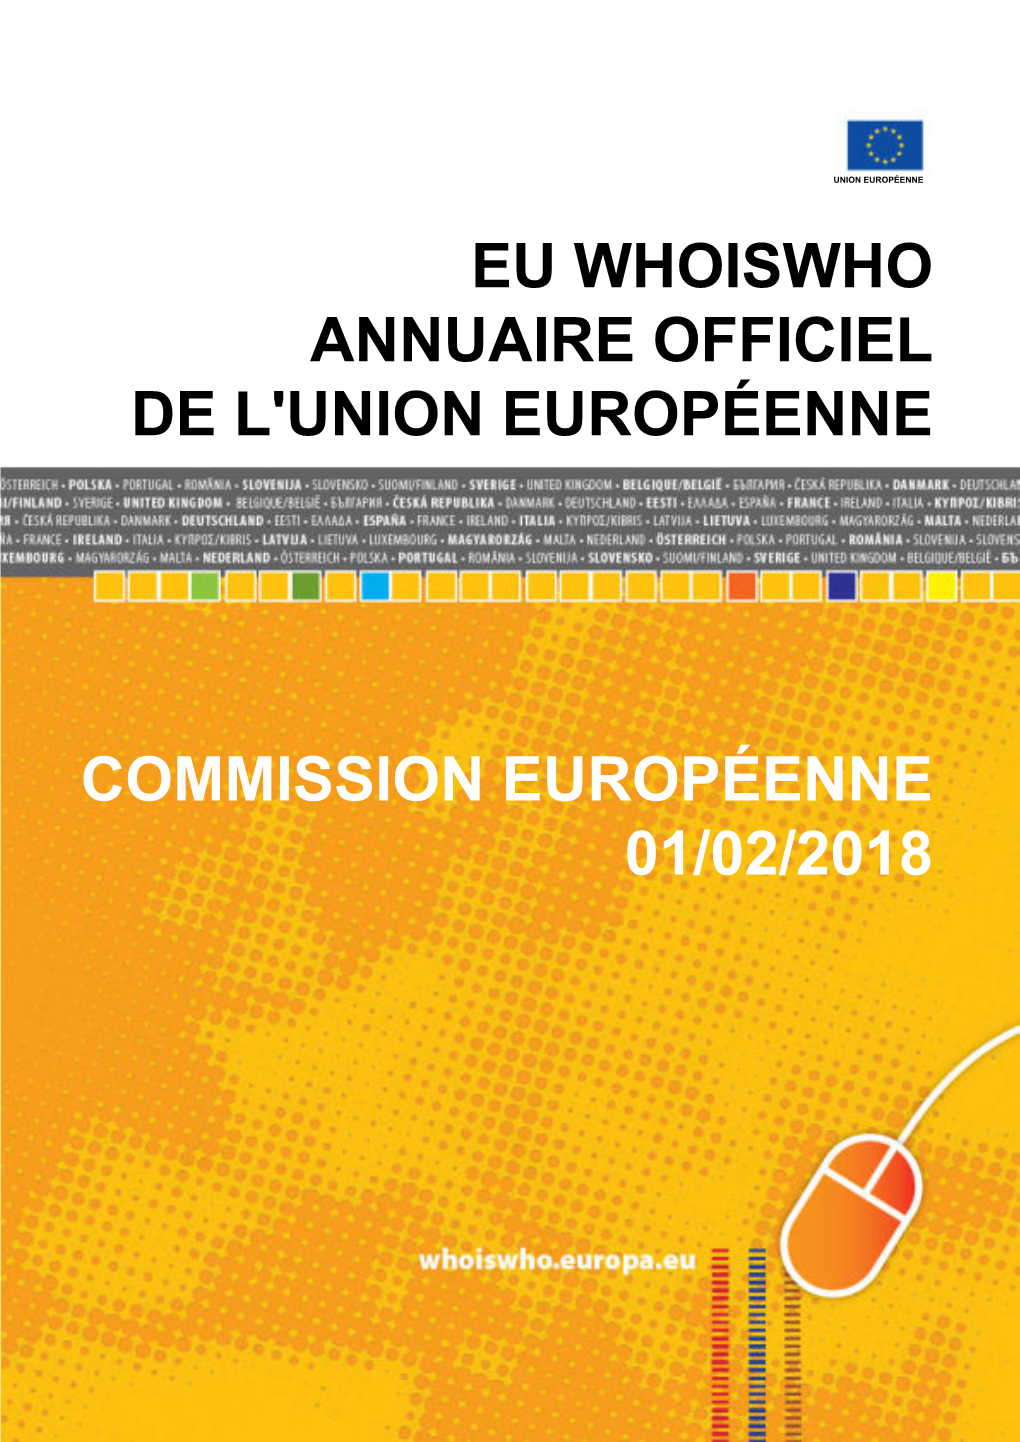 Eu Whoiswho Annuaire Officiel De L'union Européenne Commission Européenne 01/02/2018